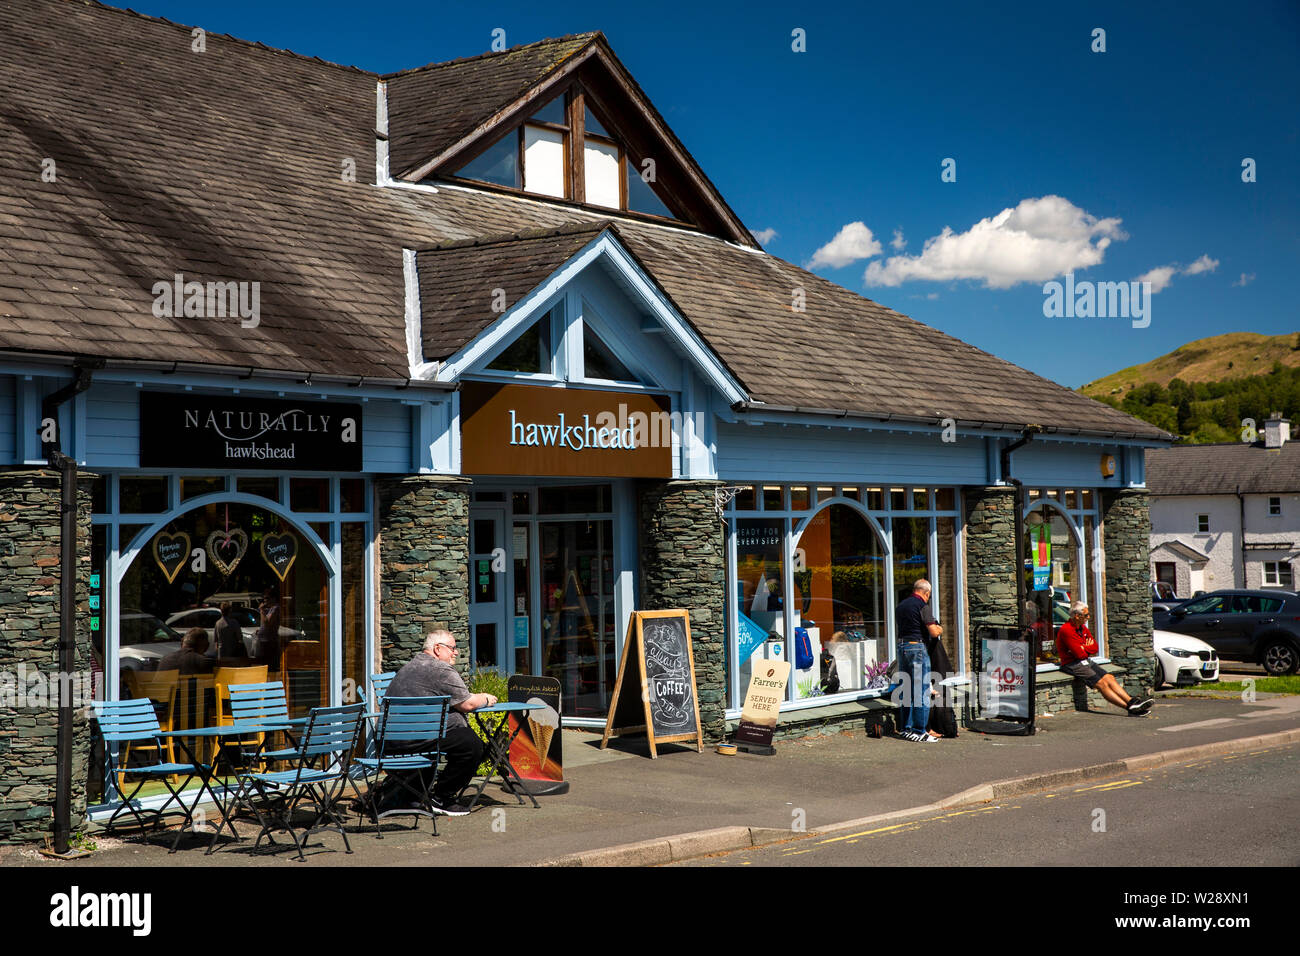 Regno Unito, Cumbria, Hawkshead, Hawkshead outdoor negozio di abbigliamento e naturalmente Hawkshead cafe con il cliente seduto al sole al tavolo esterno Foto Stock